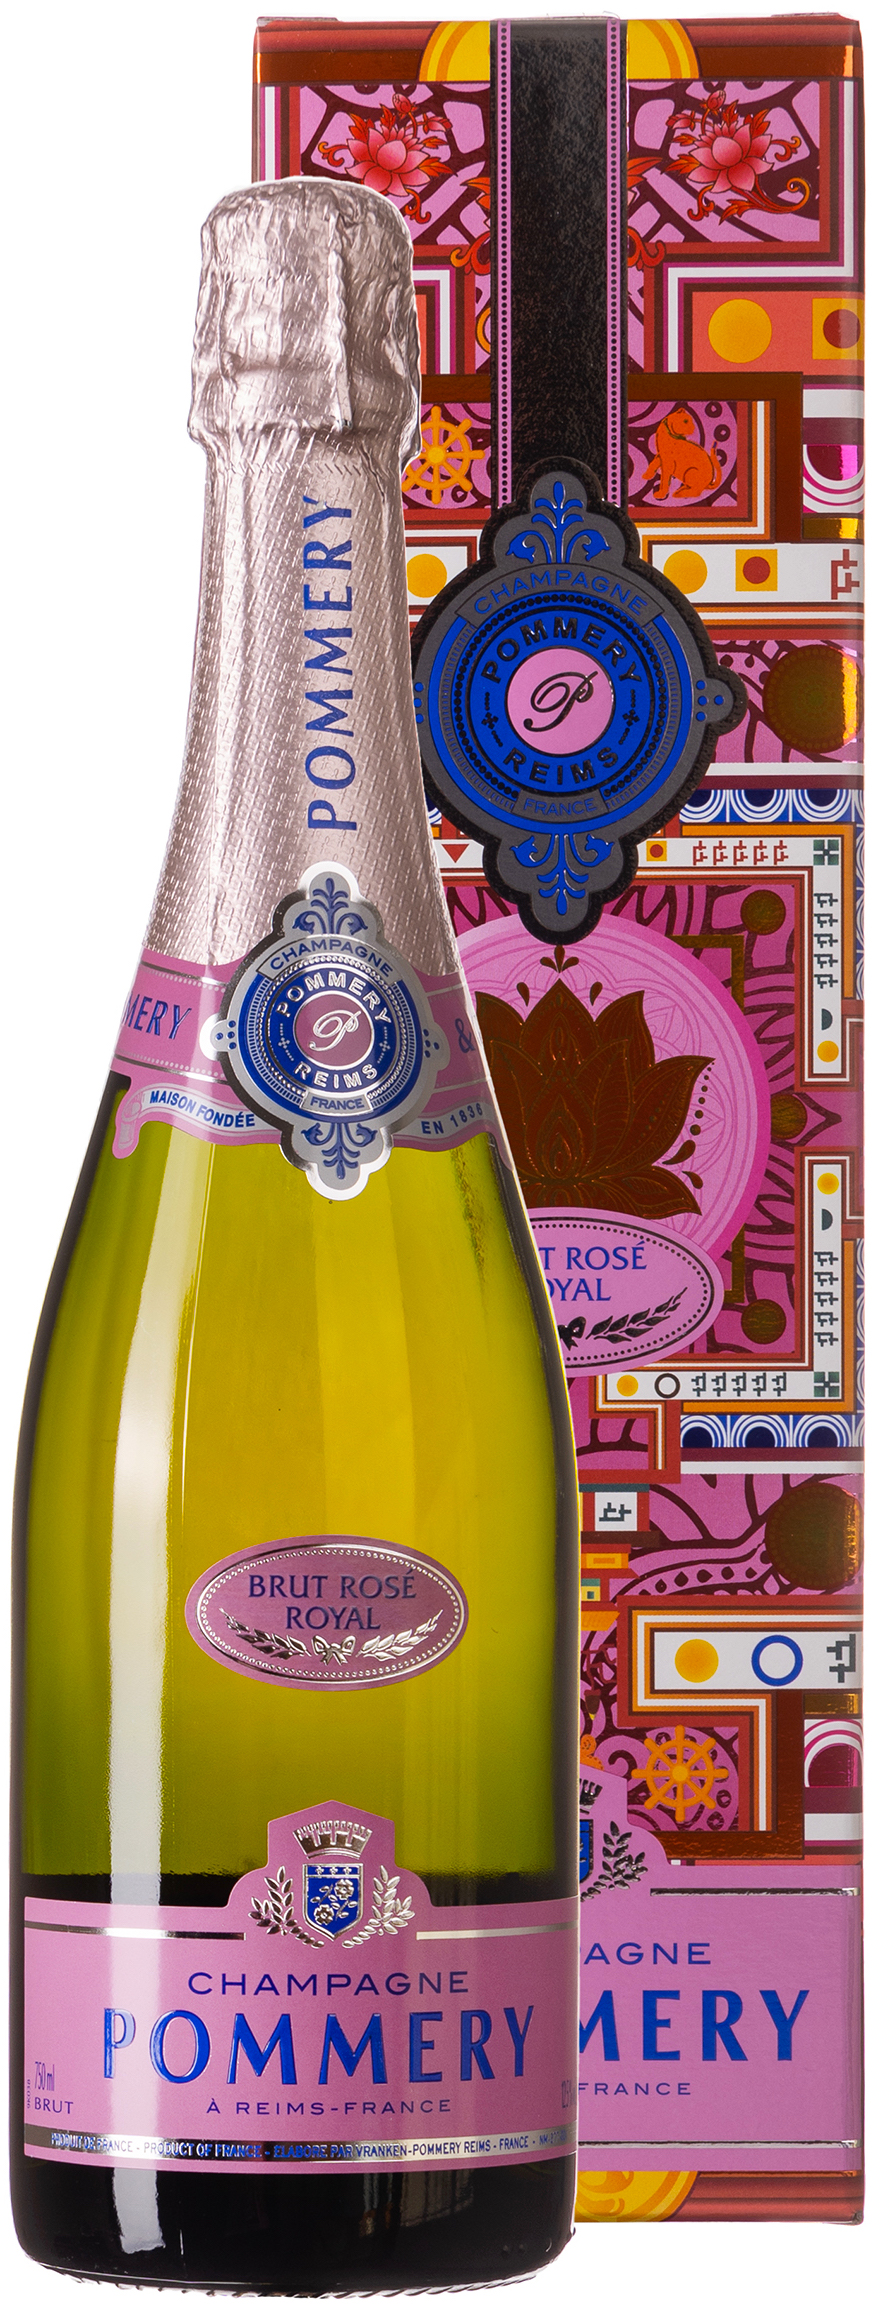 Pommery Brut Rosé Royal Champagner 12,5% vol. 0,75L